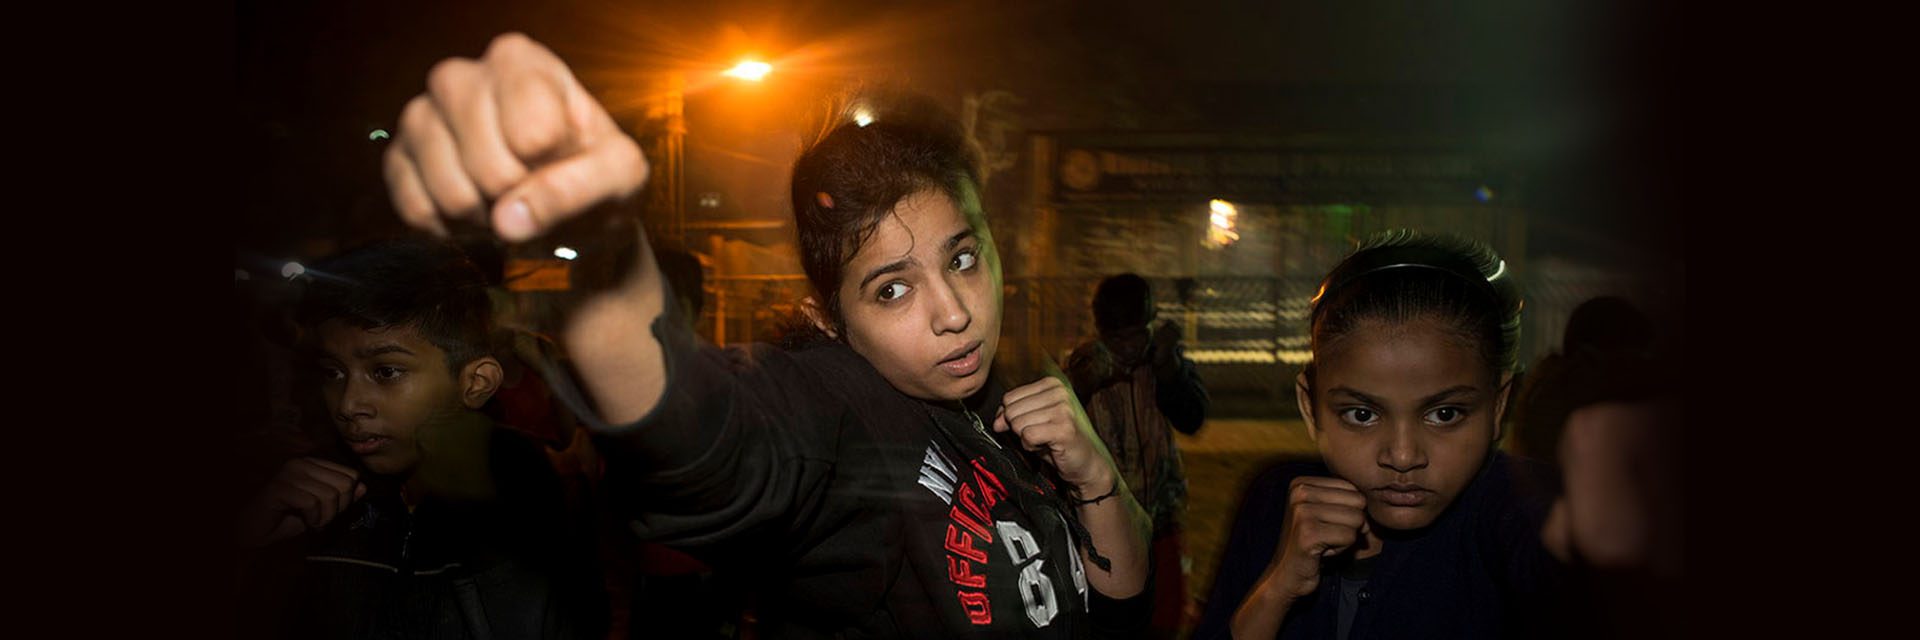 Tinju tanpa burqa, peninju gadis Kolkata yang bersemangat ini melakukan pukulan kalah mati